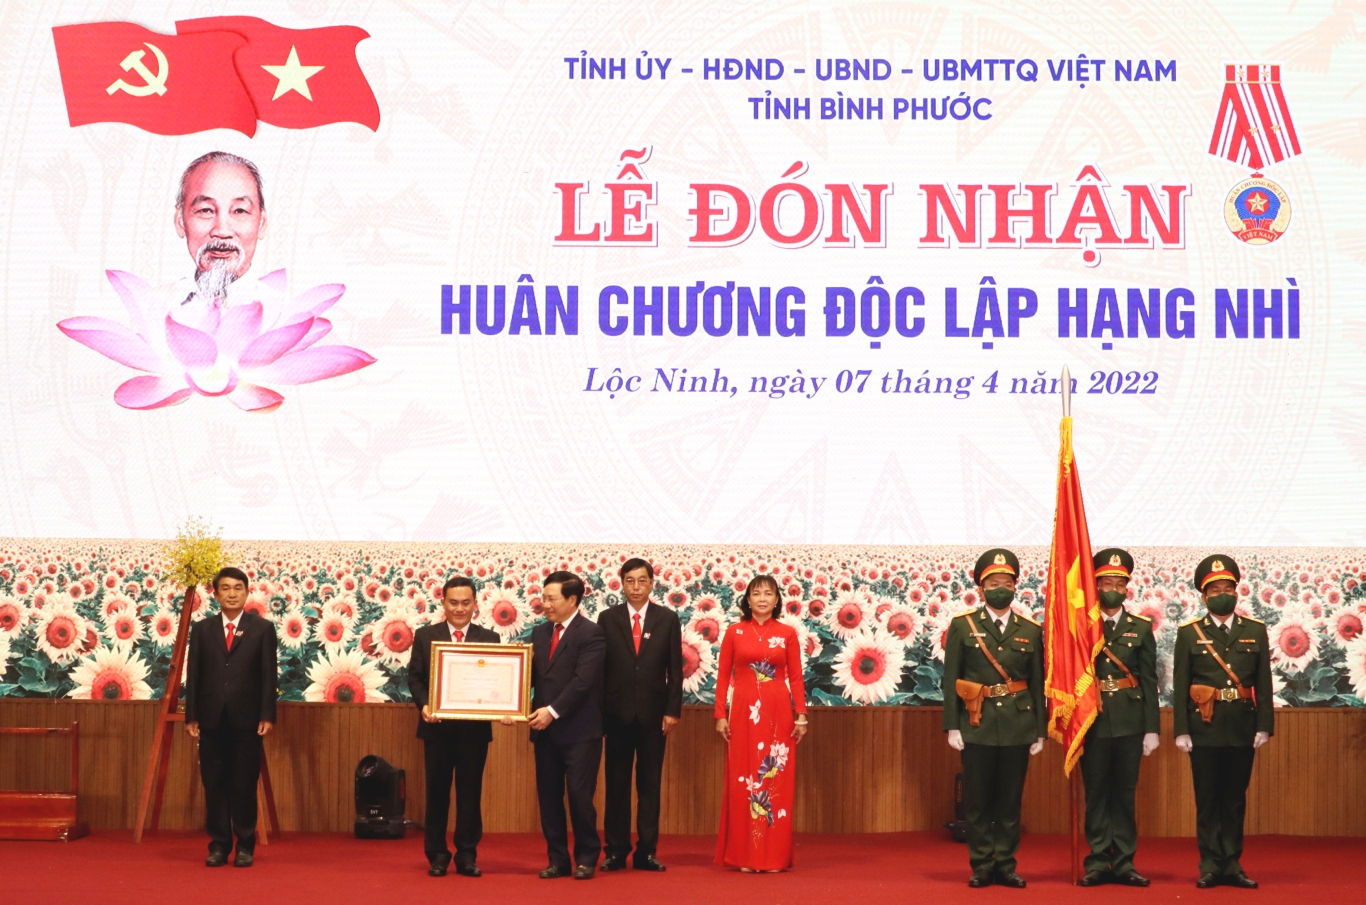 Phó Thủ tướng thường trực Phạm Bình Minh trao quyết định của Chủ tịch nước về việc tặng thưởng Huân chương Độc lập hạng nhì cho Đảng bộ, chính quyền, nhân dân huyện Lộc Ninh